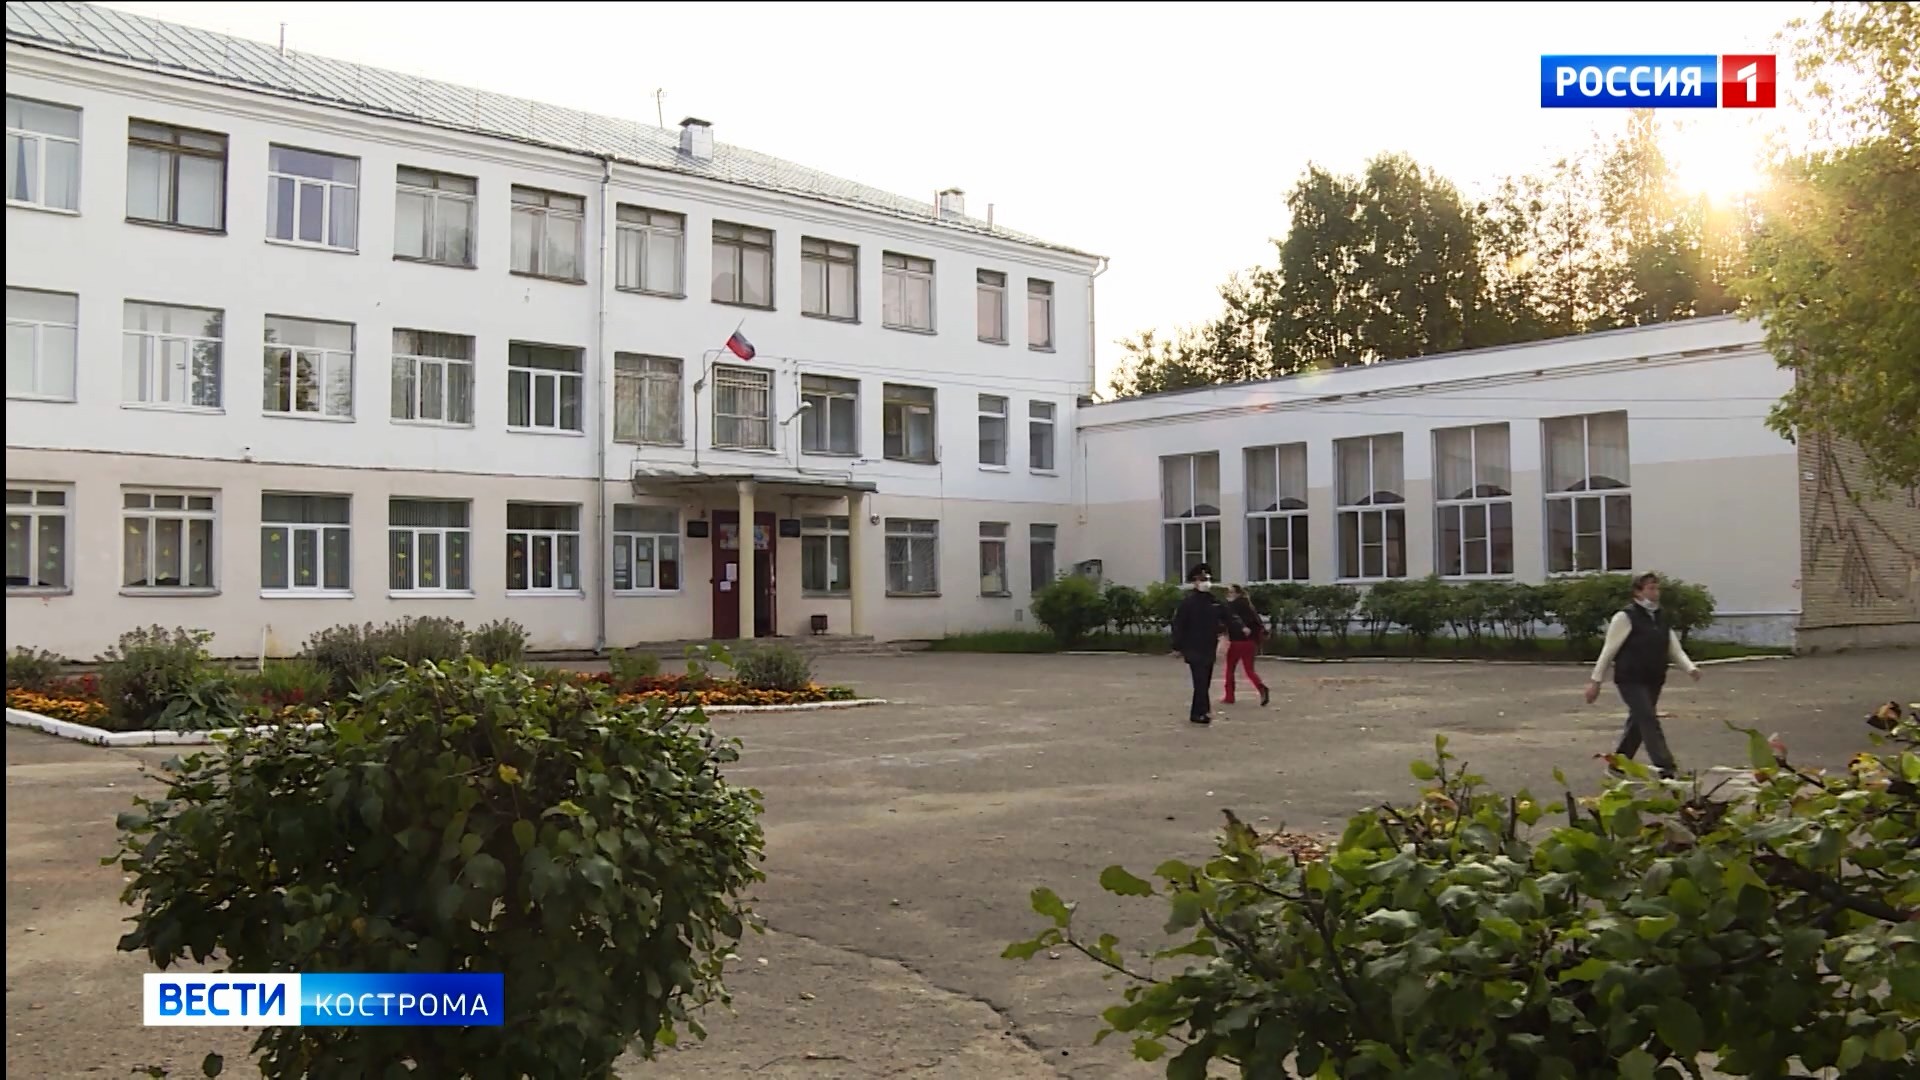 Избирательные участки Костромской области готовы к голосованию